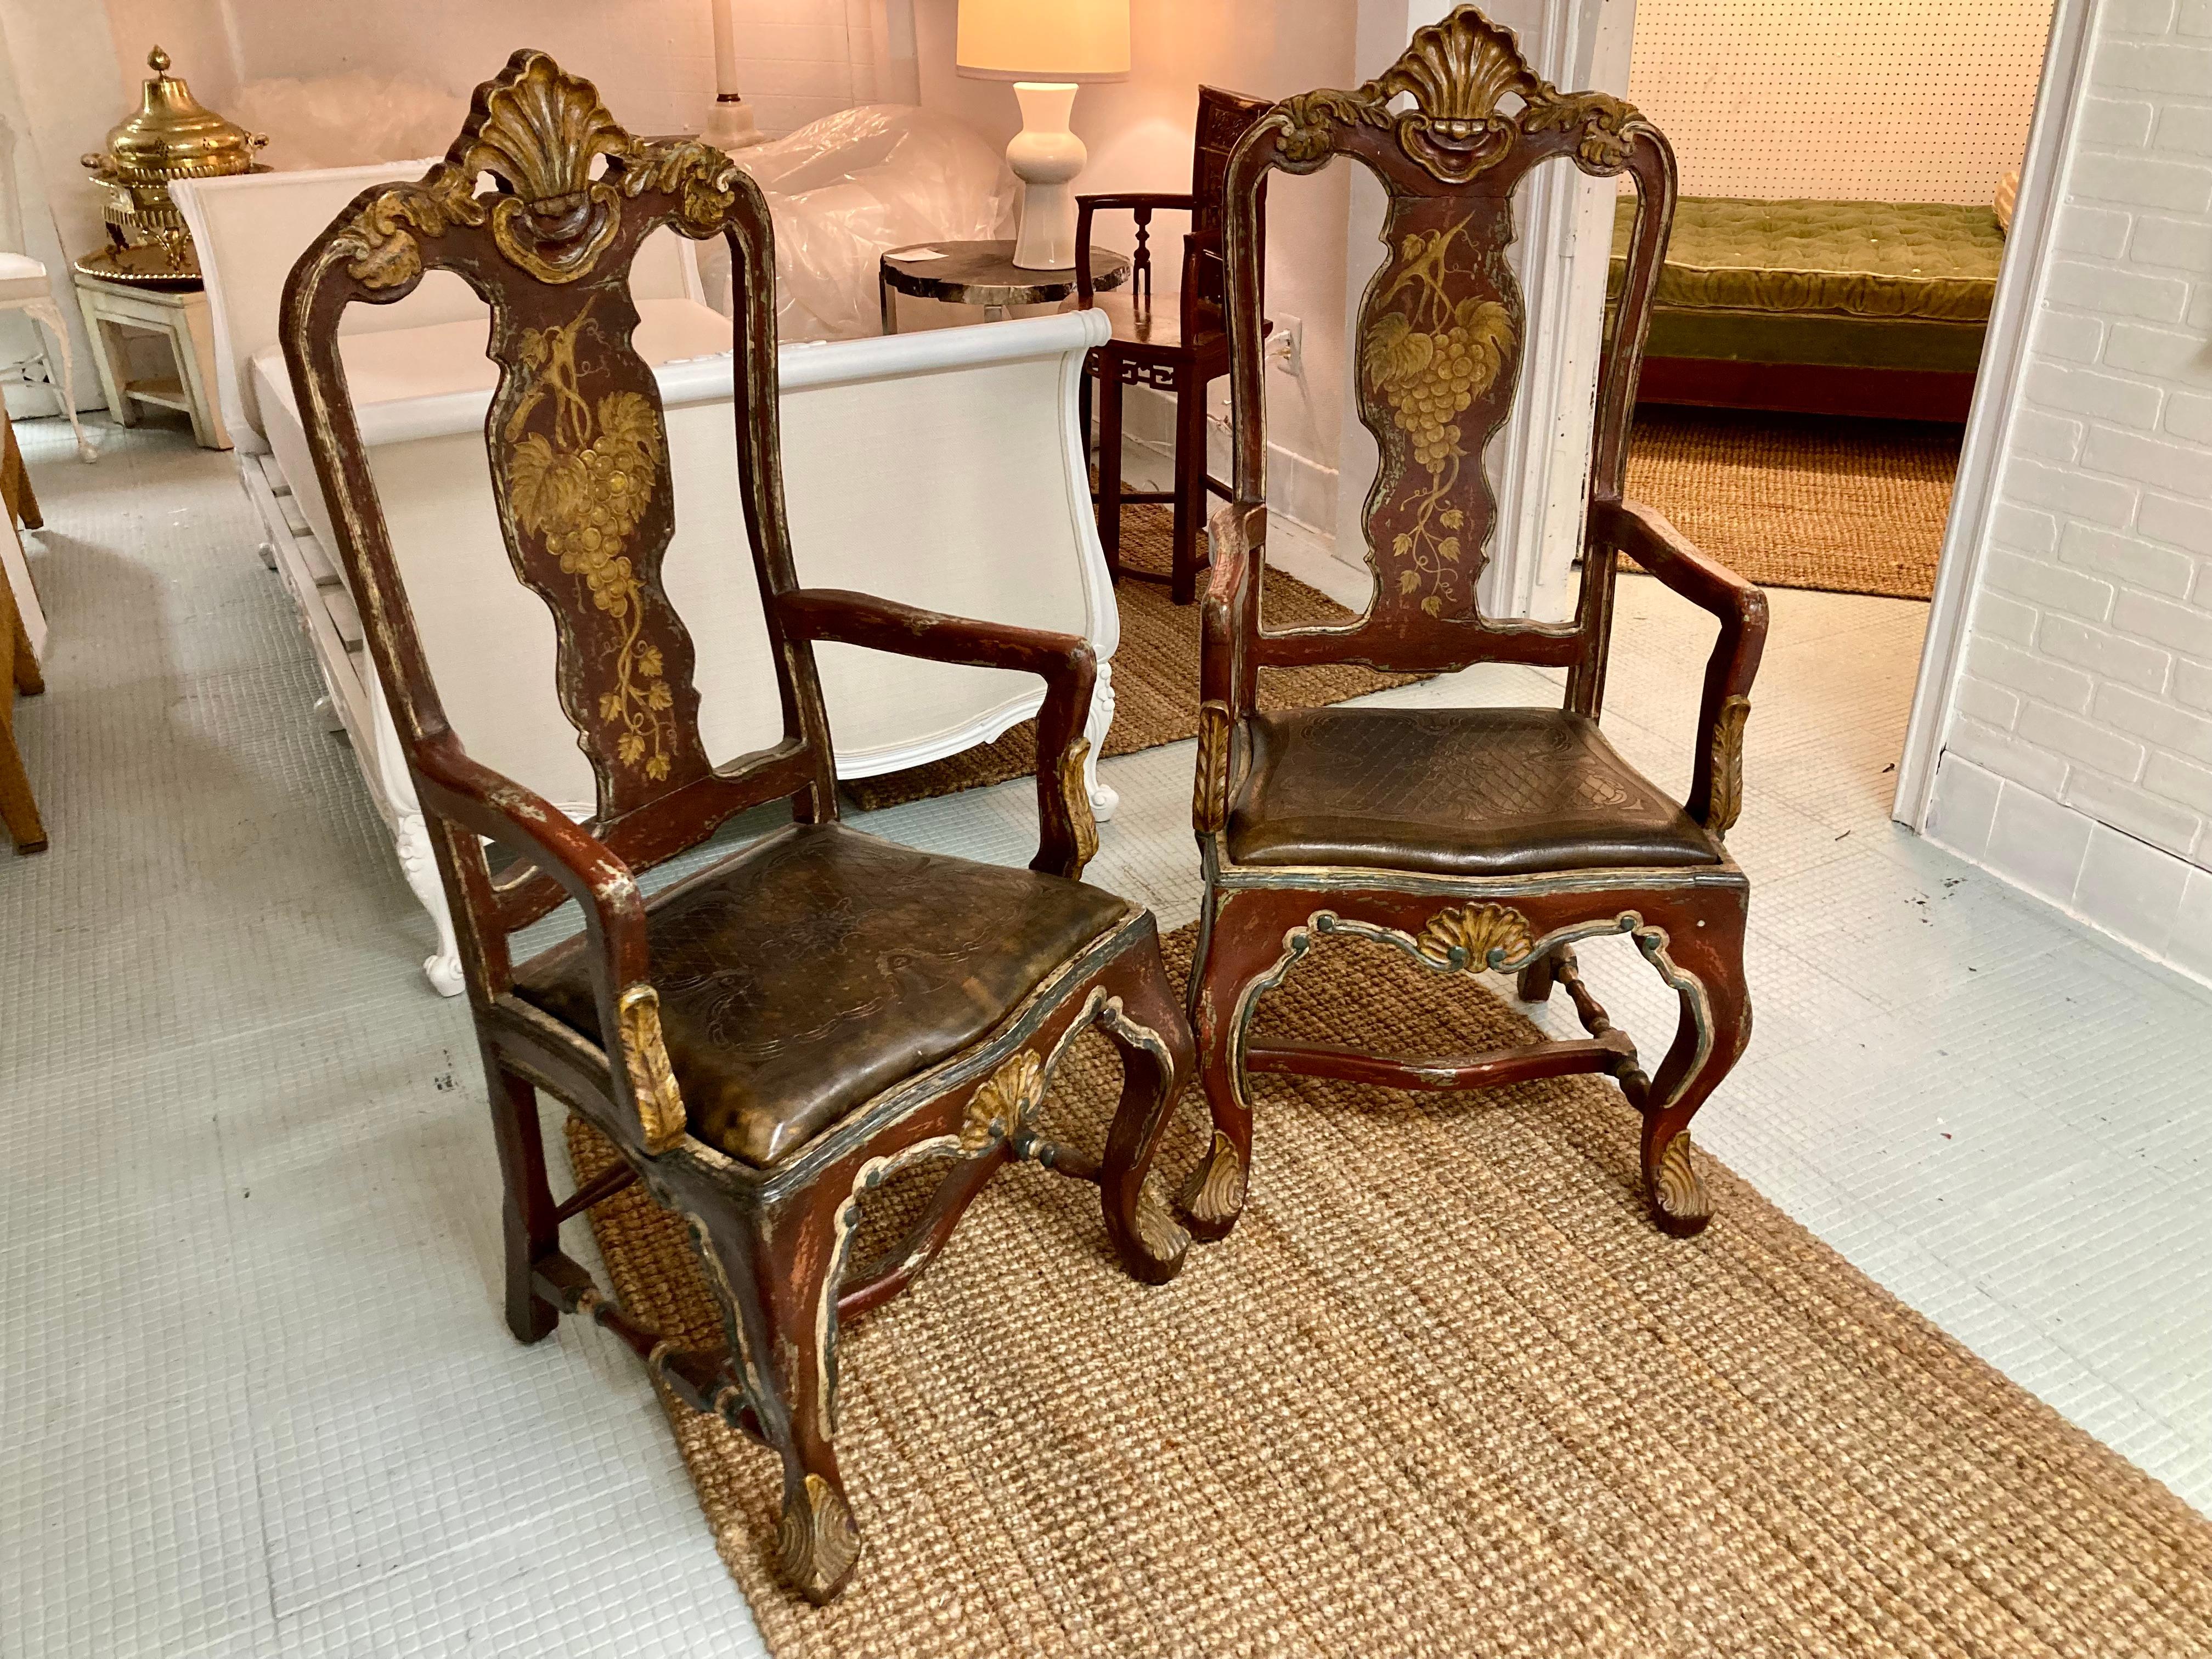 Magnifique paire de fauteuils vénitiens avec finition peinte d'origine et sièges en cuir gaufré d'origine. Fabuleuse sculpture détaillée, finition peinte originale et décorations dorées à l'intérieur et à l'extérieur des dos. Ajoutez un style